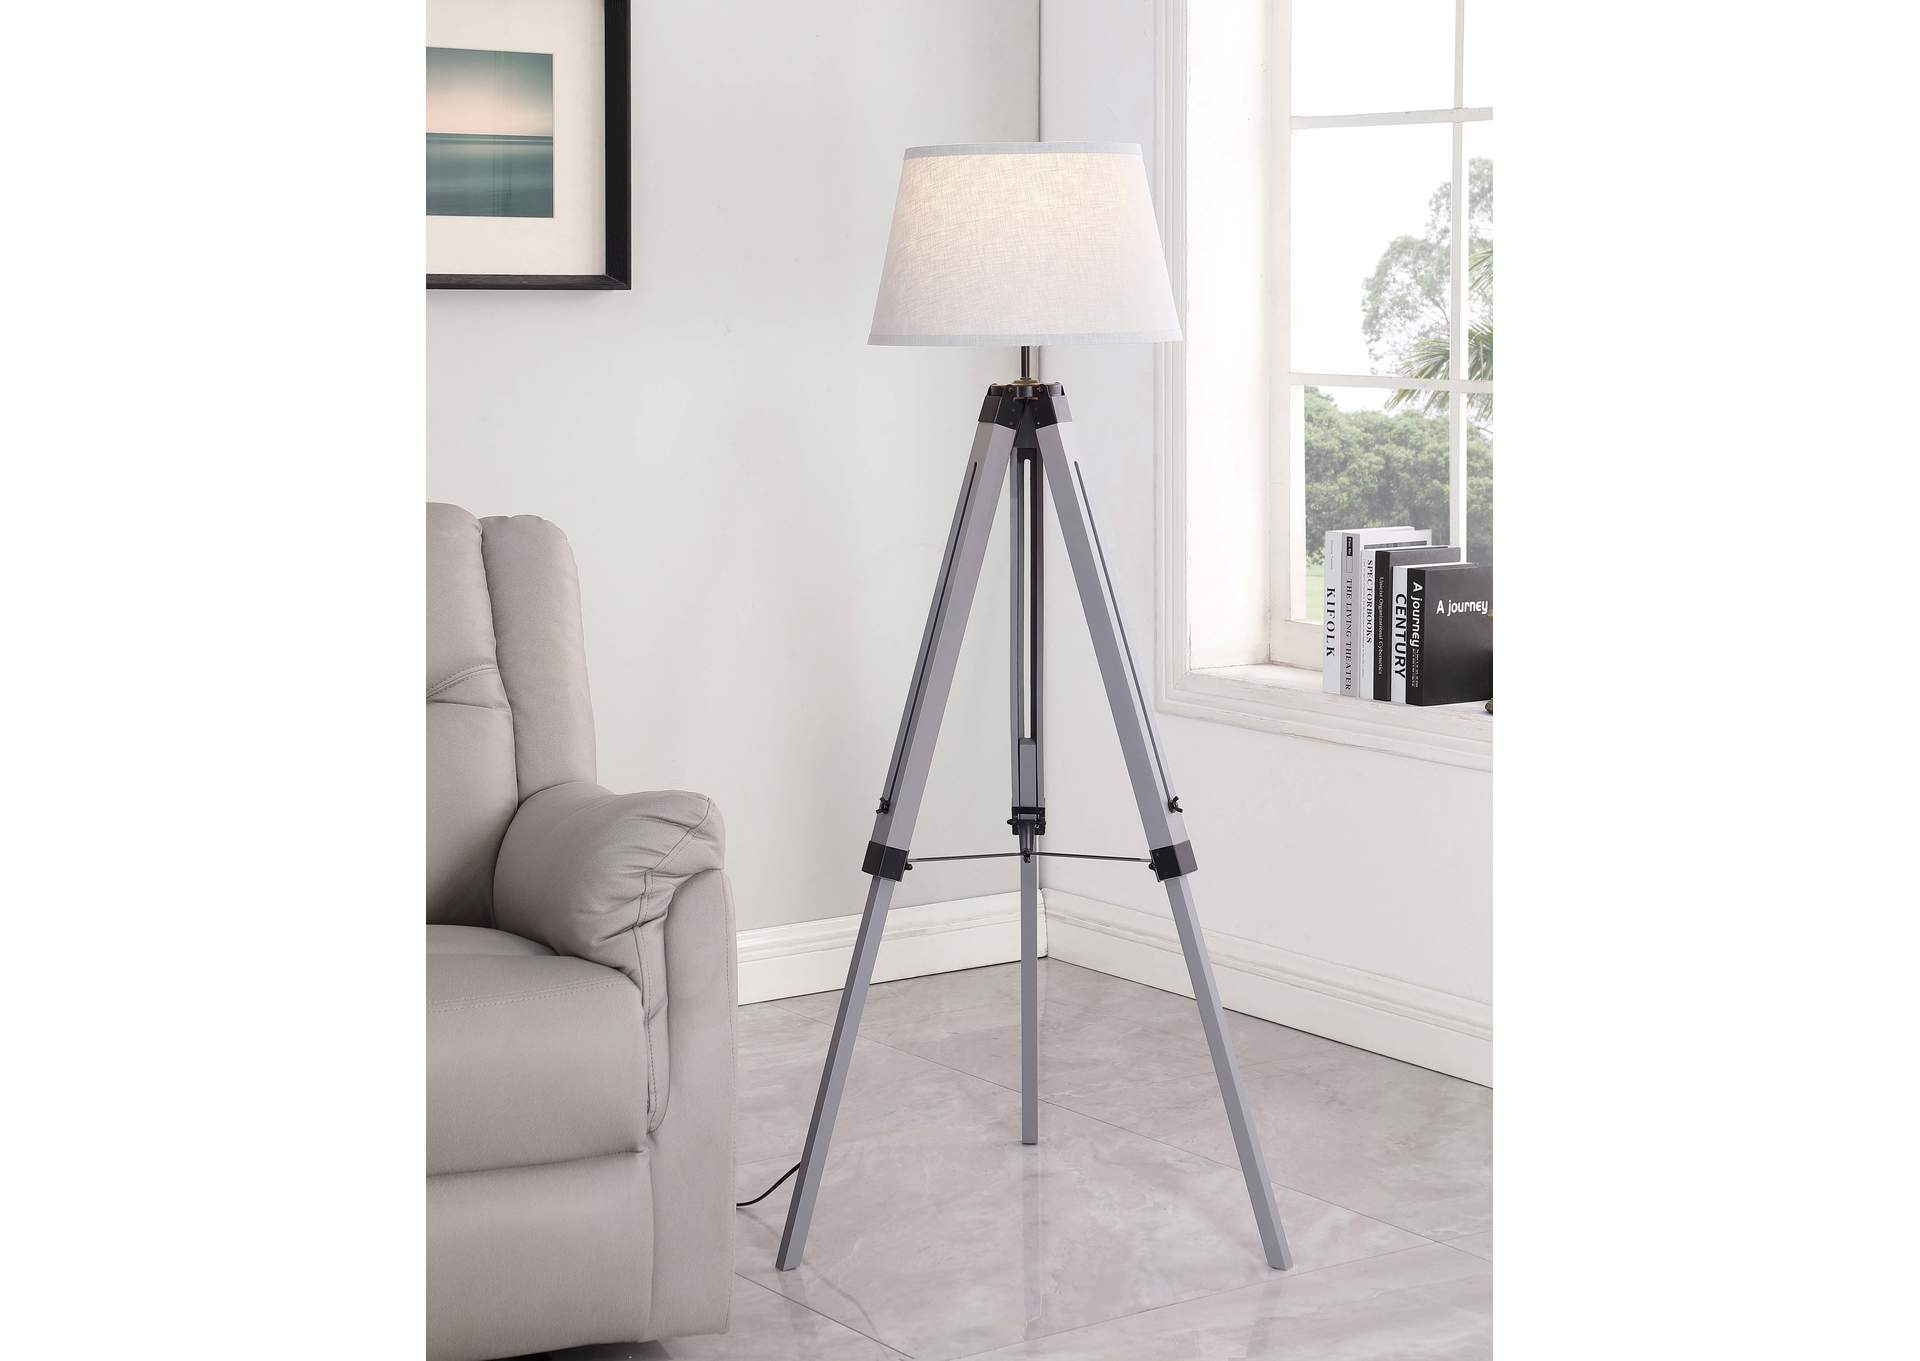 FLOOR LAMP,Coaster Furniture